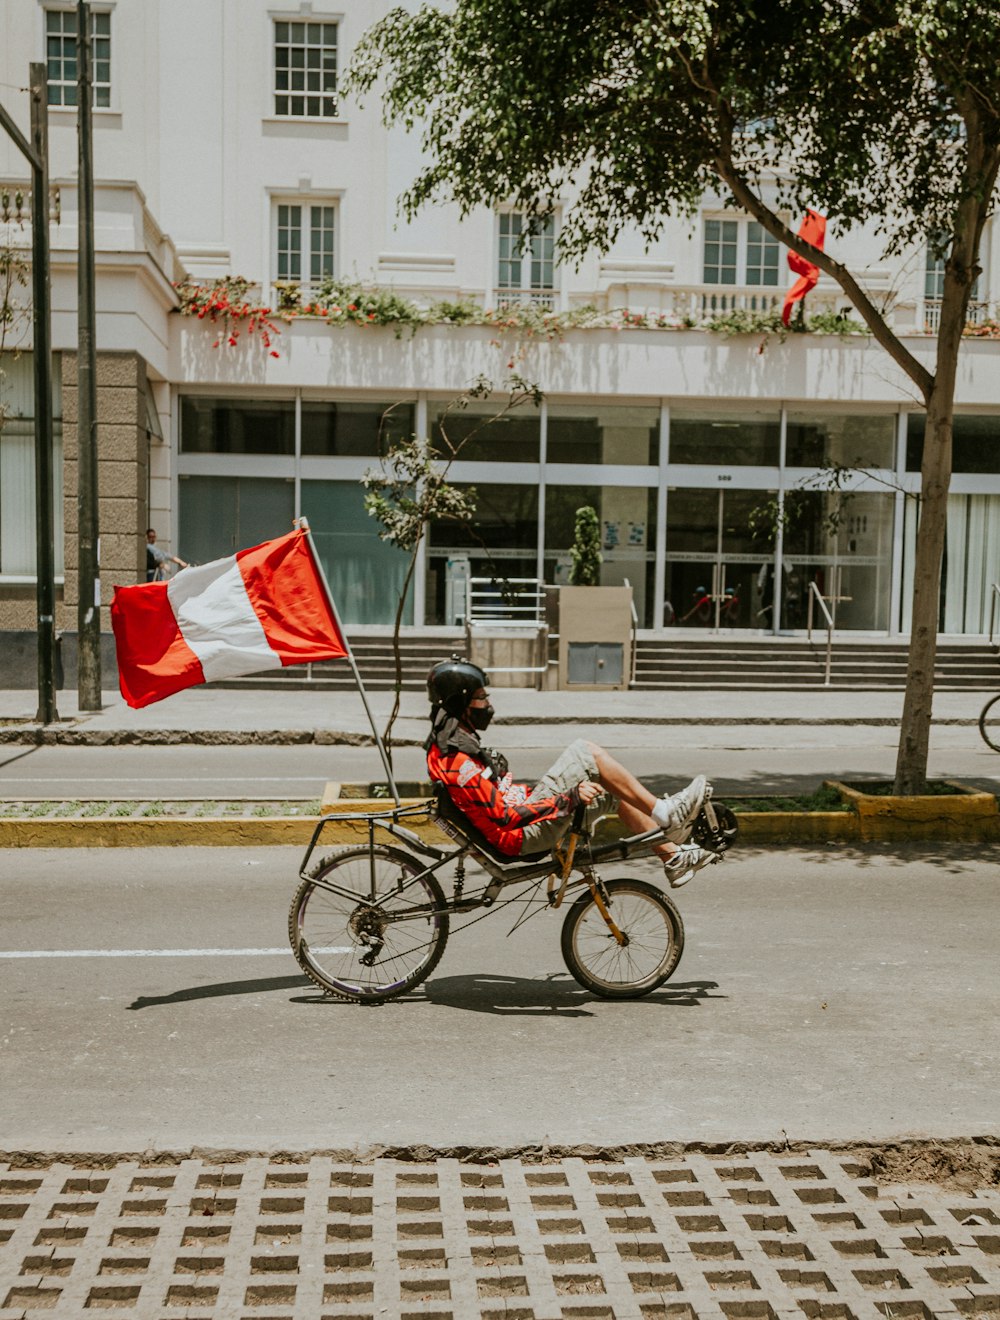 Mann im roten Hemd fährt tagsüber auf der Straße Fahrrad